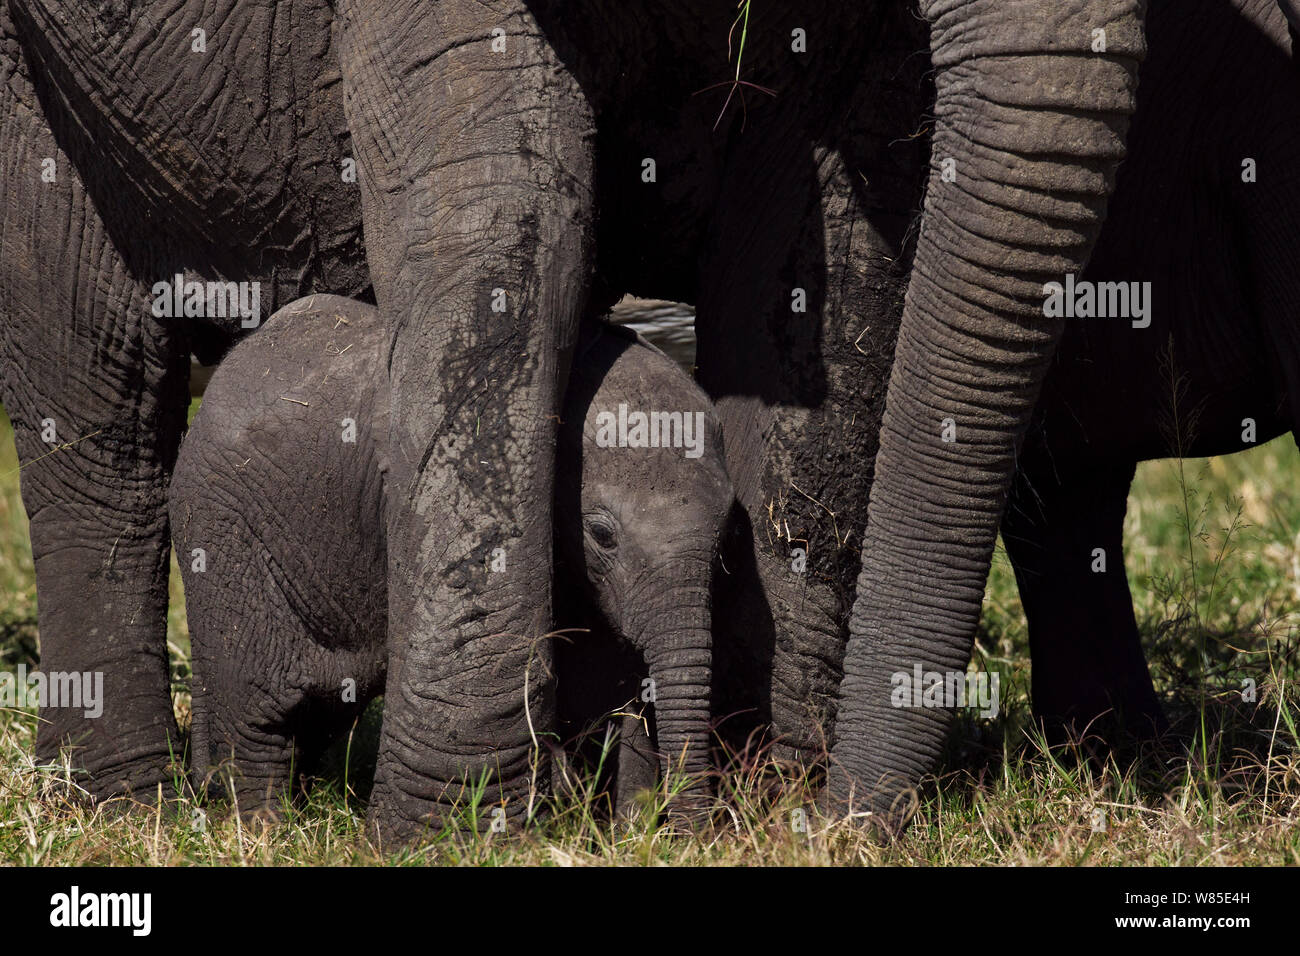 L'éléphant africain (Loxodonta africana) calf debout entre les jambes des adultes pour la protection. Masai Mara National Reserve, Kenya. Feb 2012. Banque D'Images